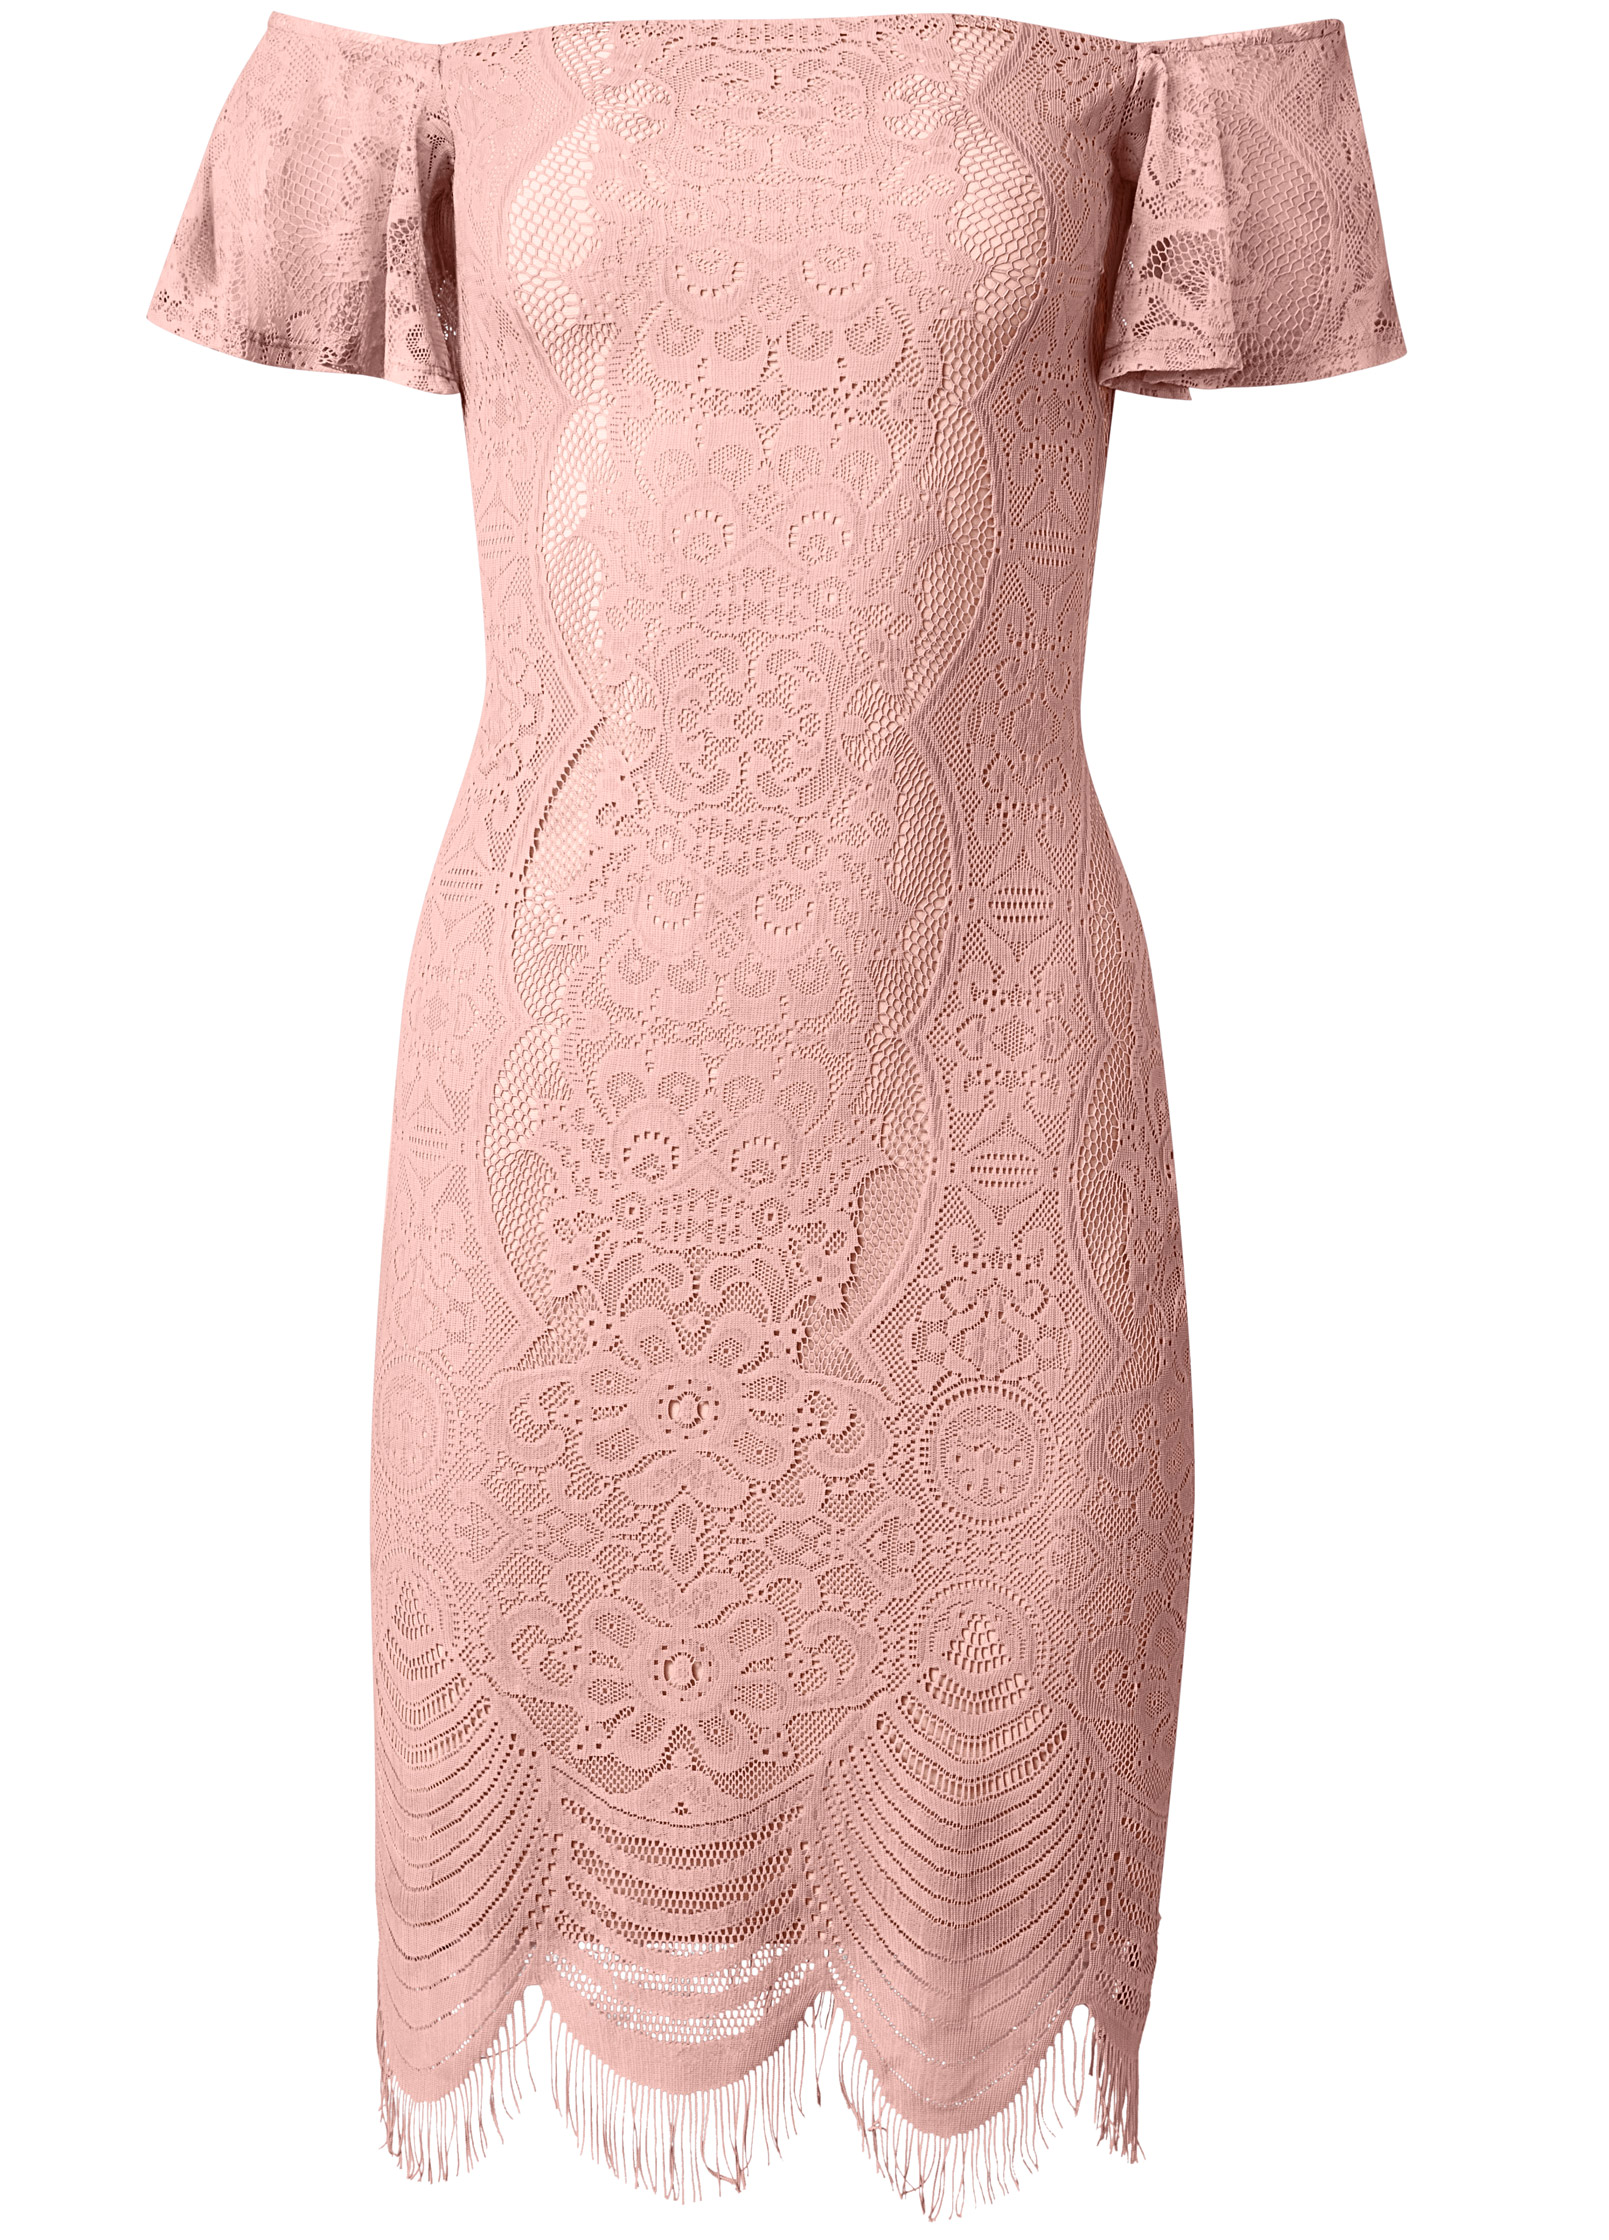 Off-The-Shoulder Lace Dress in Peach | VENUS